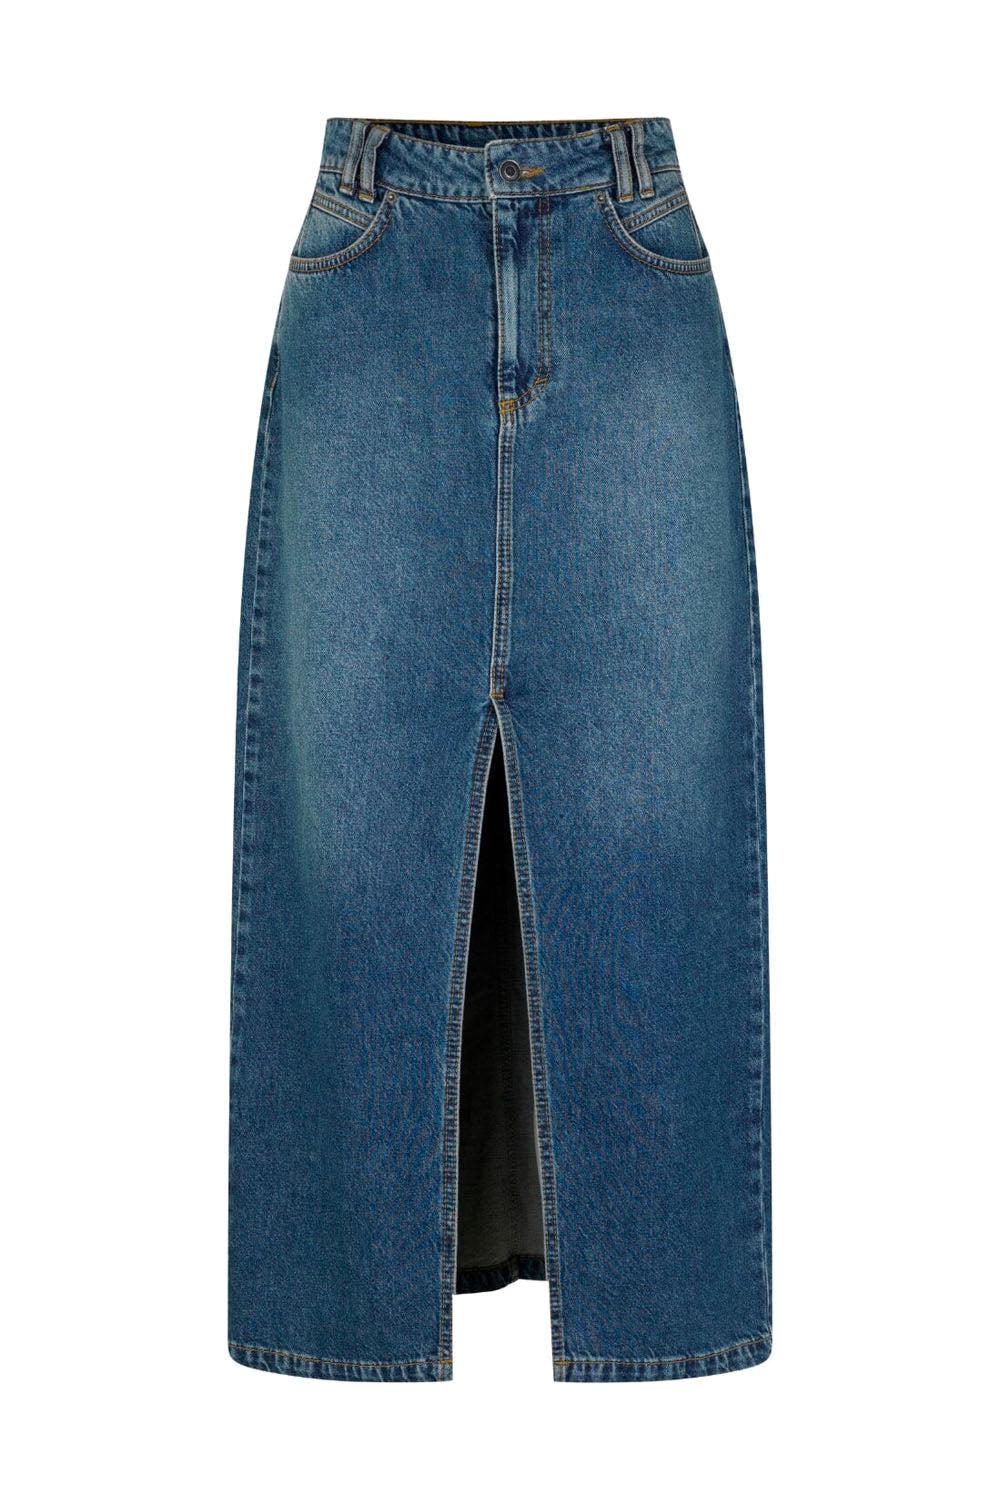 Lopa Long-M Skirt Vintage Blue Wash